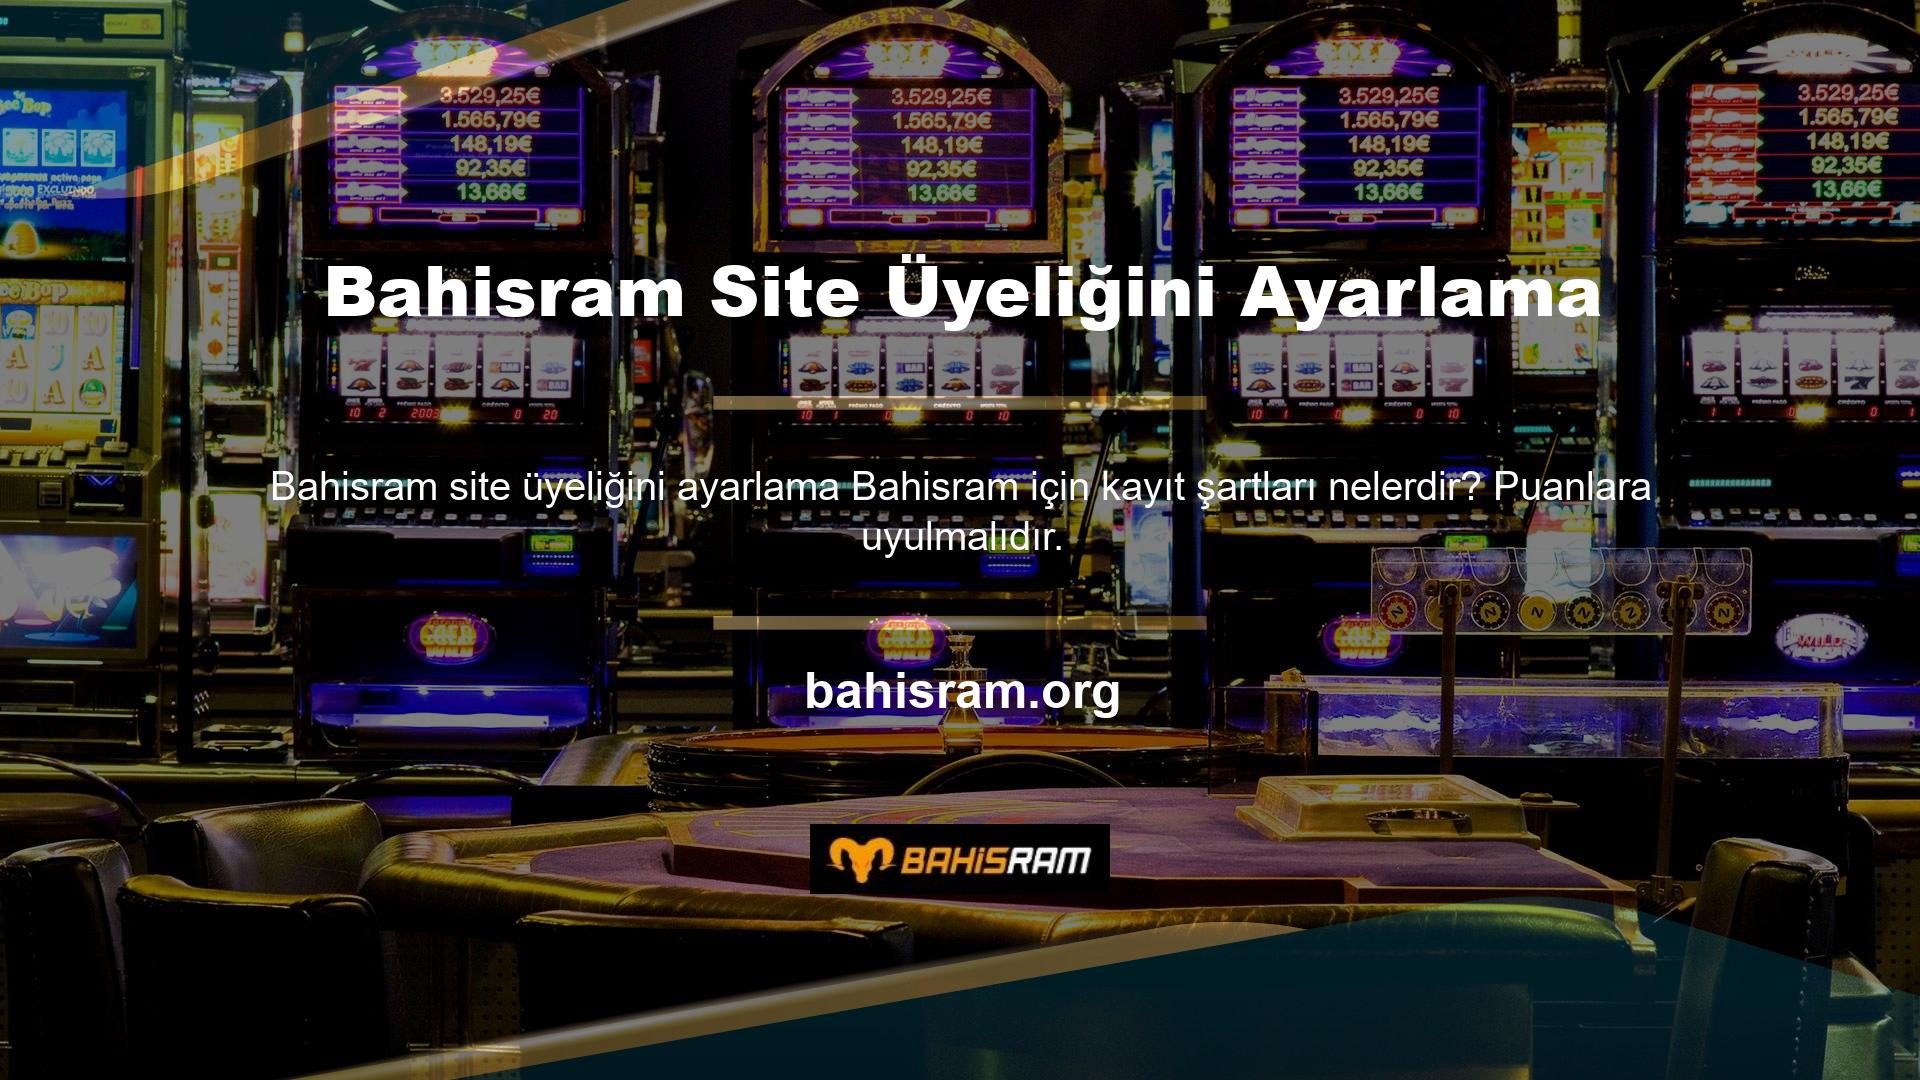 Bahisram ilginç bir kayıt süreci ve beğenilen bir web sitesi yapısı var